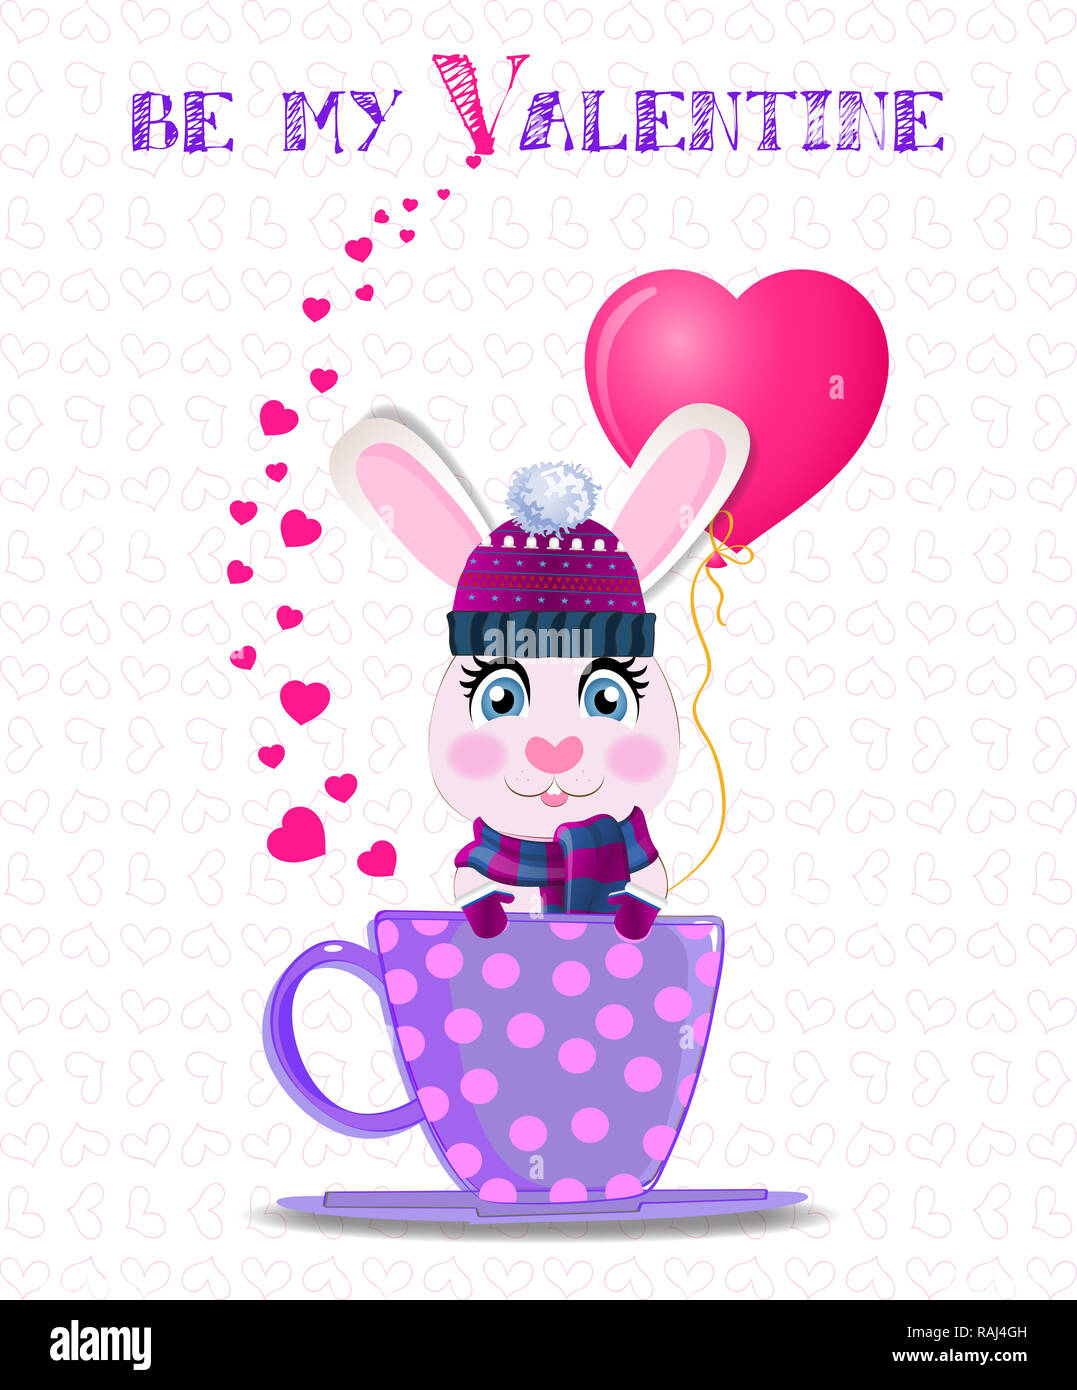 Be My Valentine card avec cute cartoon lapin en violet bonnet, écharpe en tricot et mitaines holding ballon coeur rose lilas, assis dans la tasse avec polka dot Banque D'Images